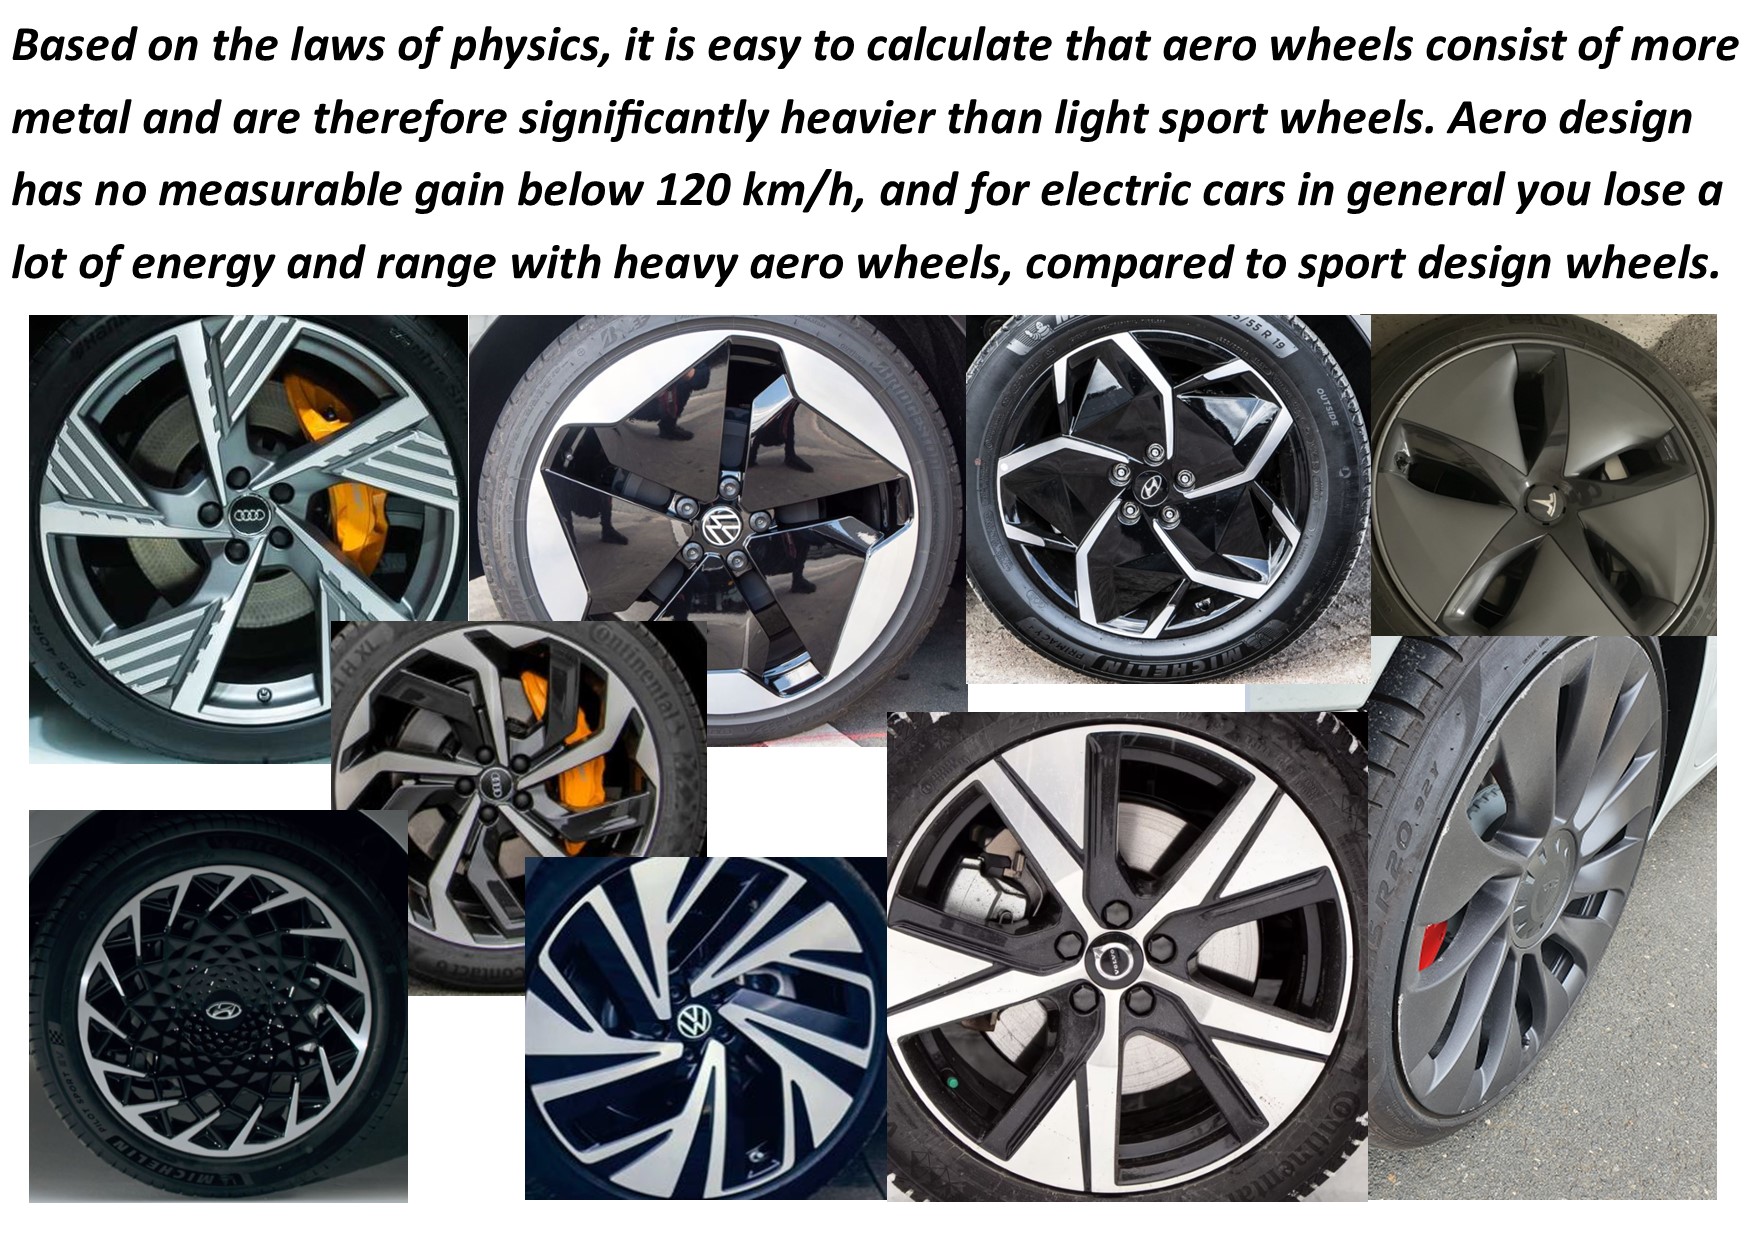 aero-wheels-versus-sport-wheels